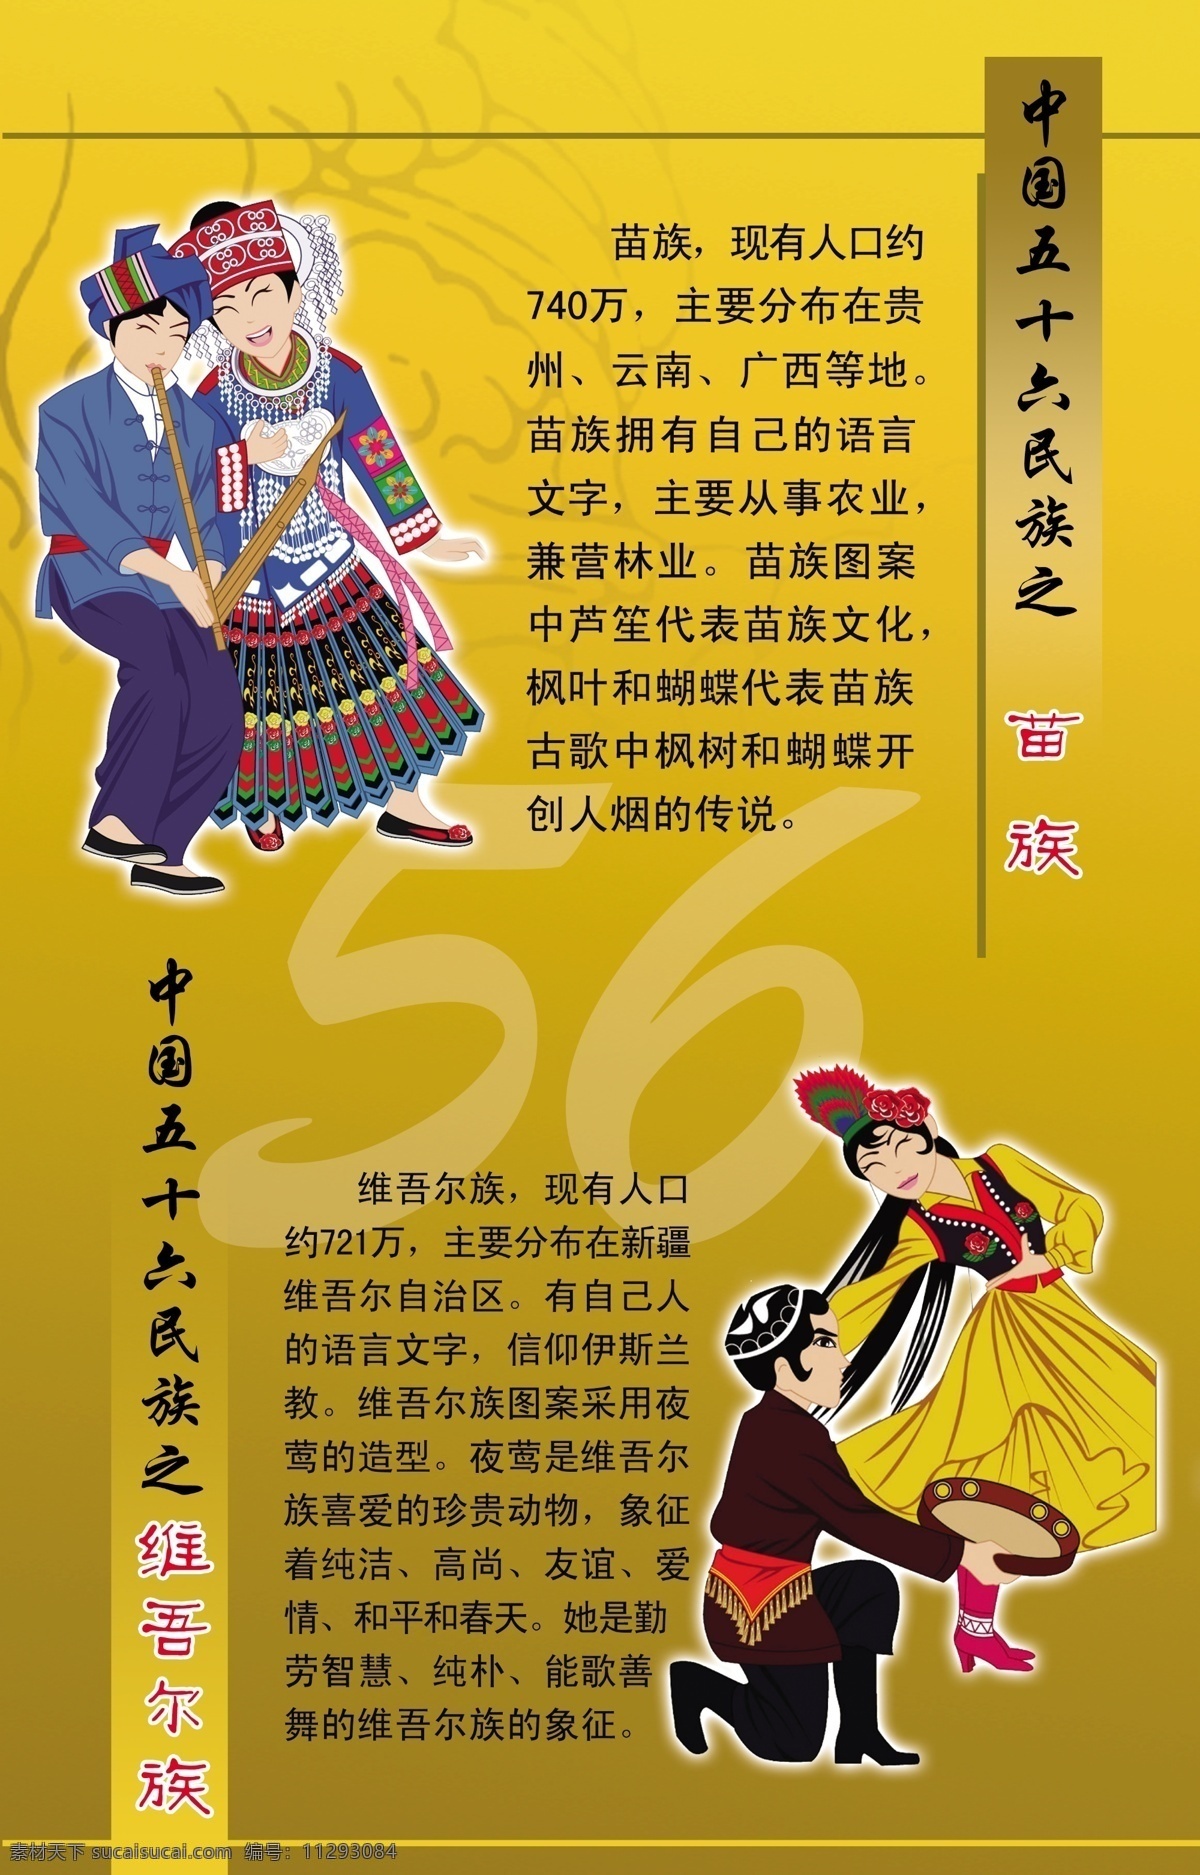 少数民族 56个民族 苗族 维吾尔族 民族知识 民族人物漫画 底纹 展板 模块 其他模版 广告设计模板 源文件